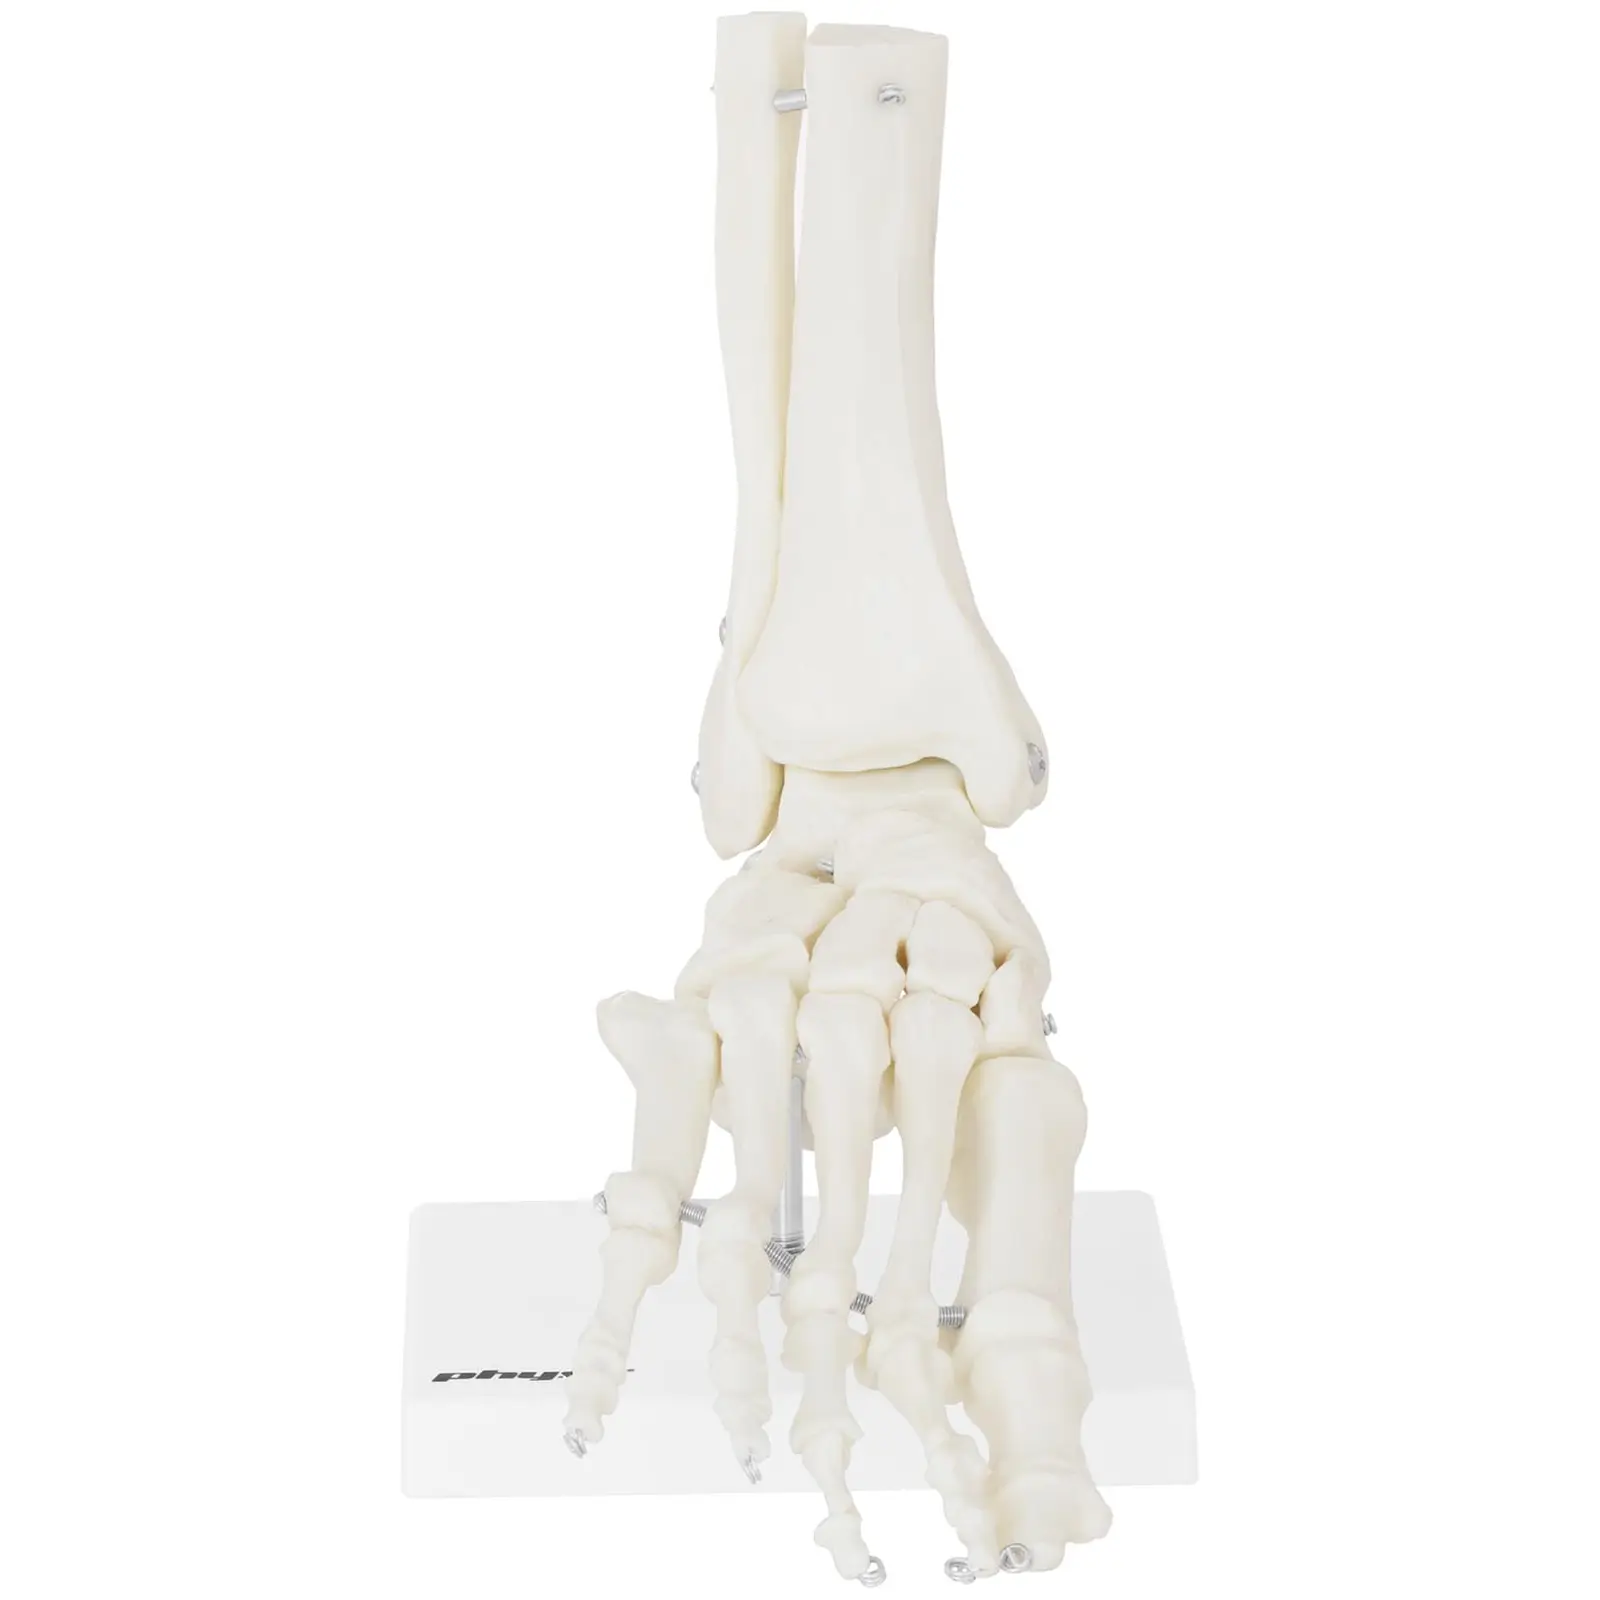 Lábfej csontváz és funkcionális lábfej modell